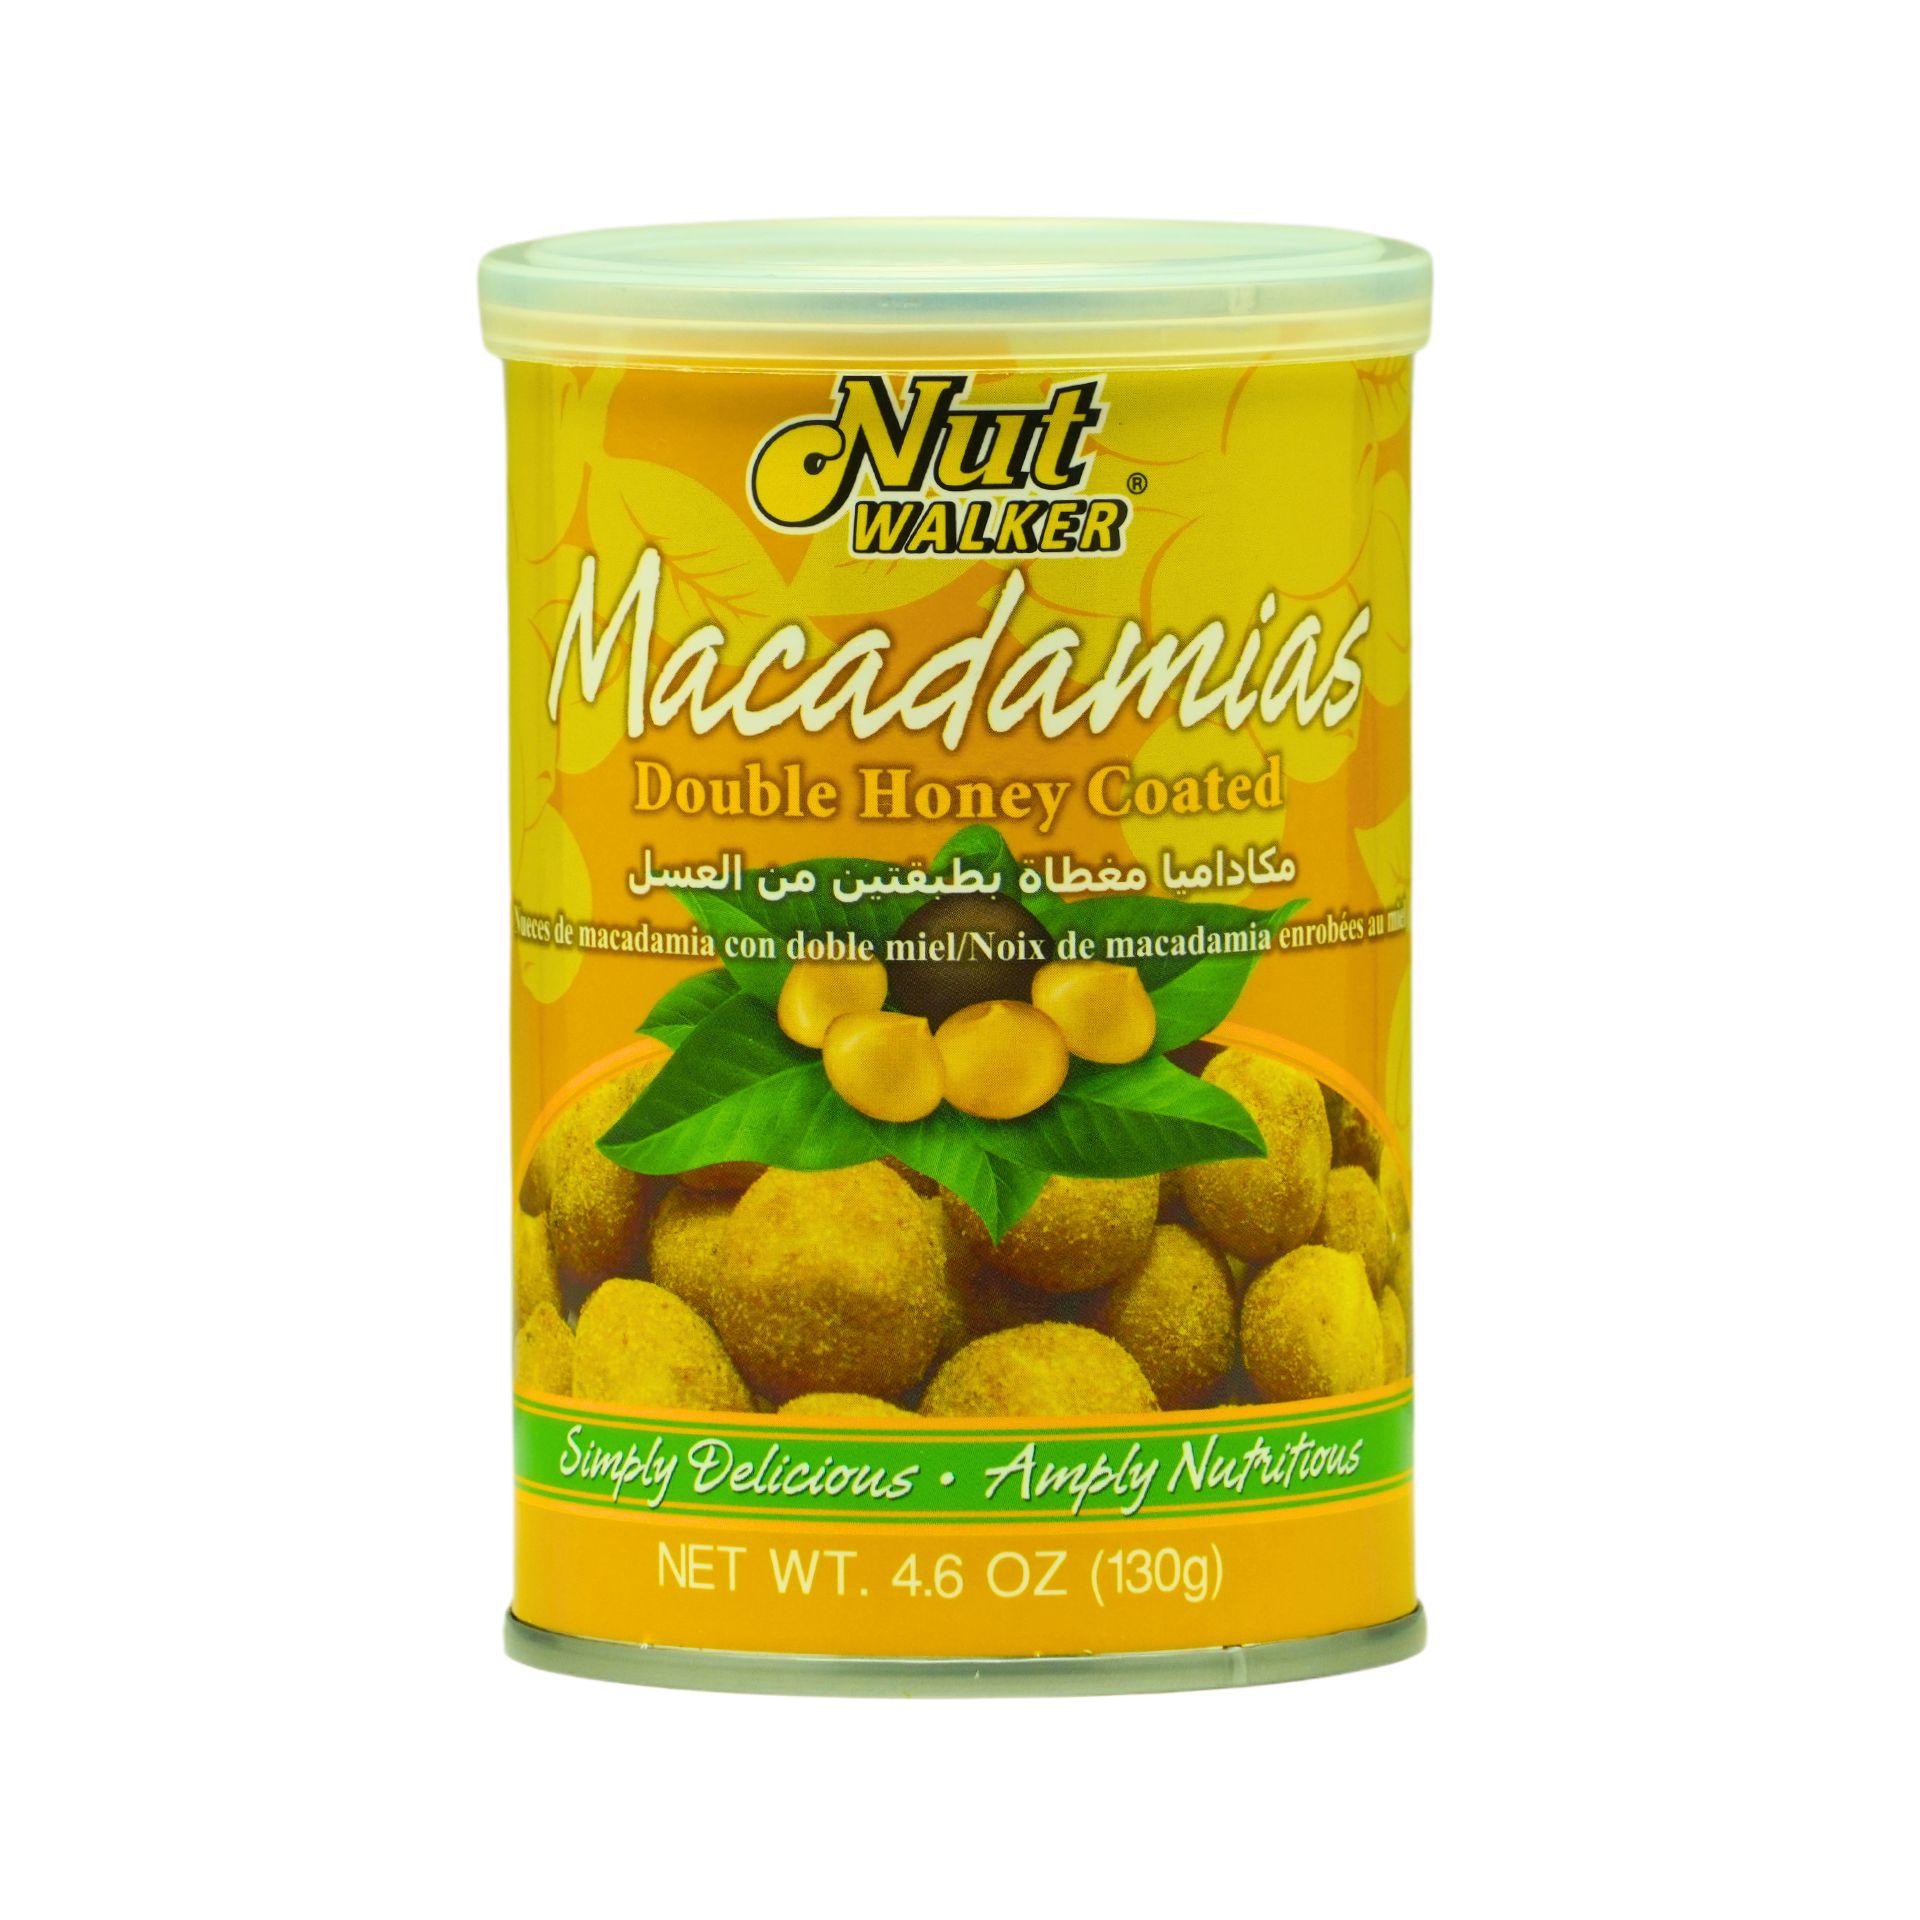 Nutwalker Double Honey Coated Macadamias (130g)